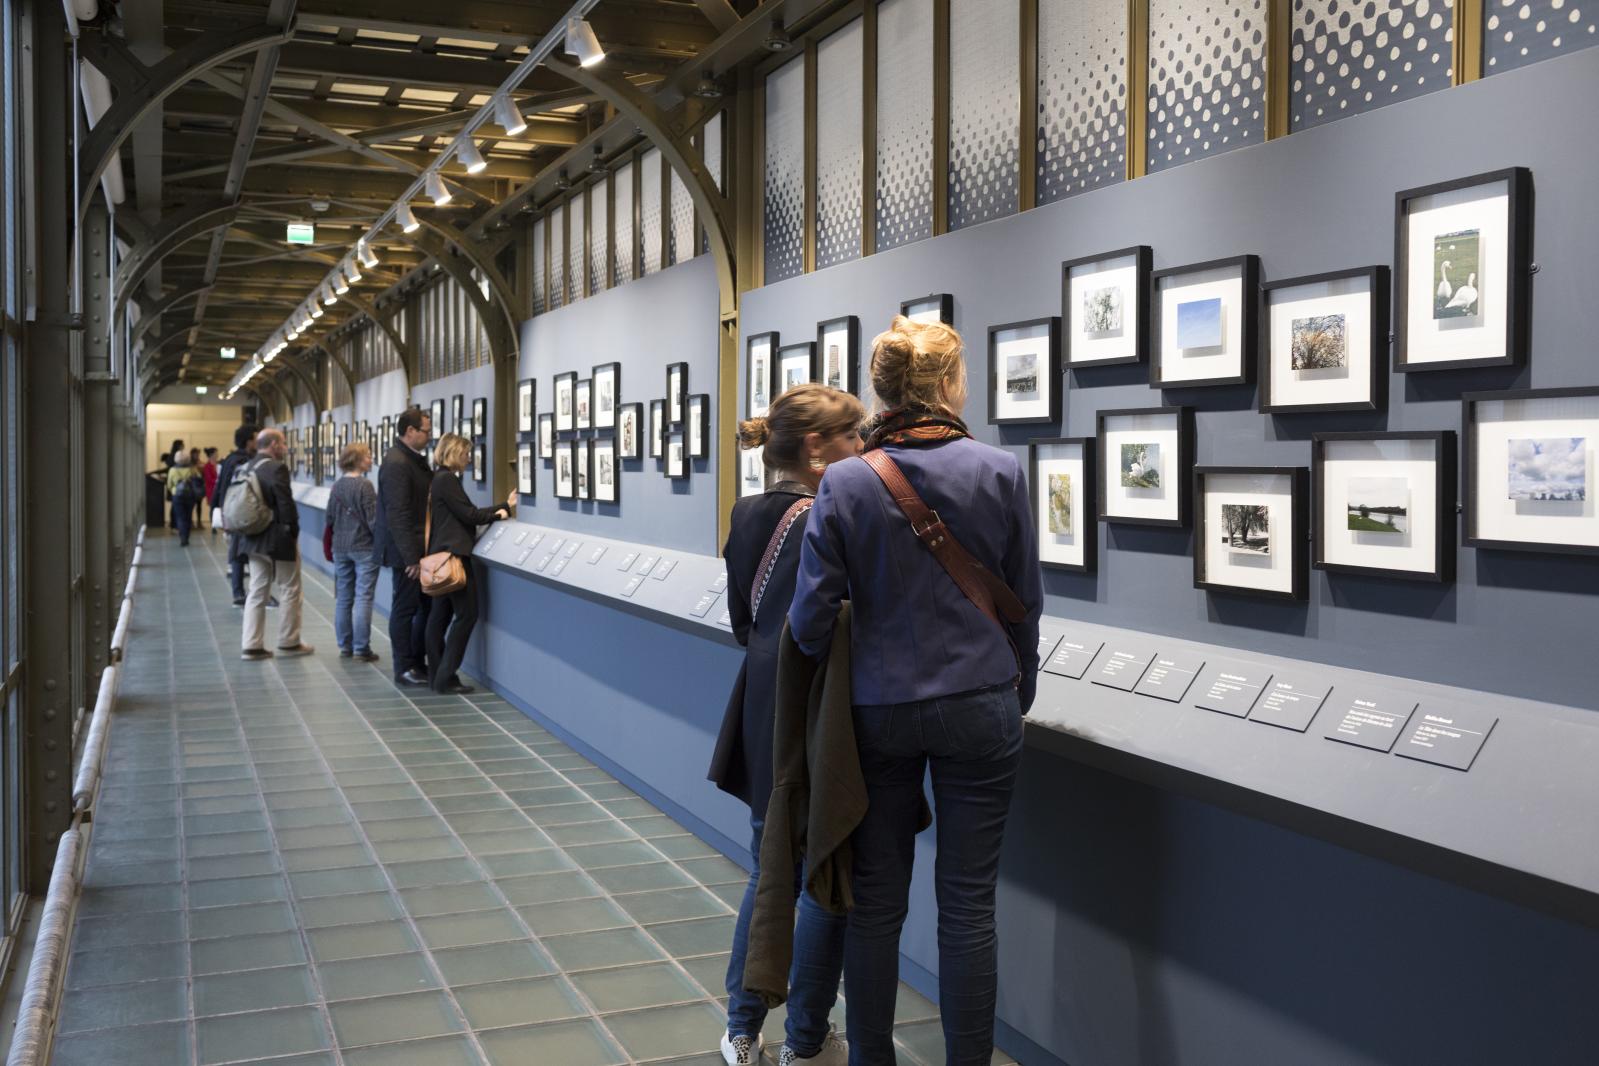  Exposition «De Mantes au musée d’Orsay, au fil de l’image», opération menée par l’institution parisienne avec les habitants de Mantes-la-Jolie et de 